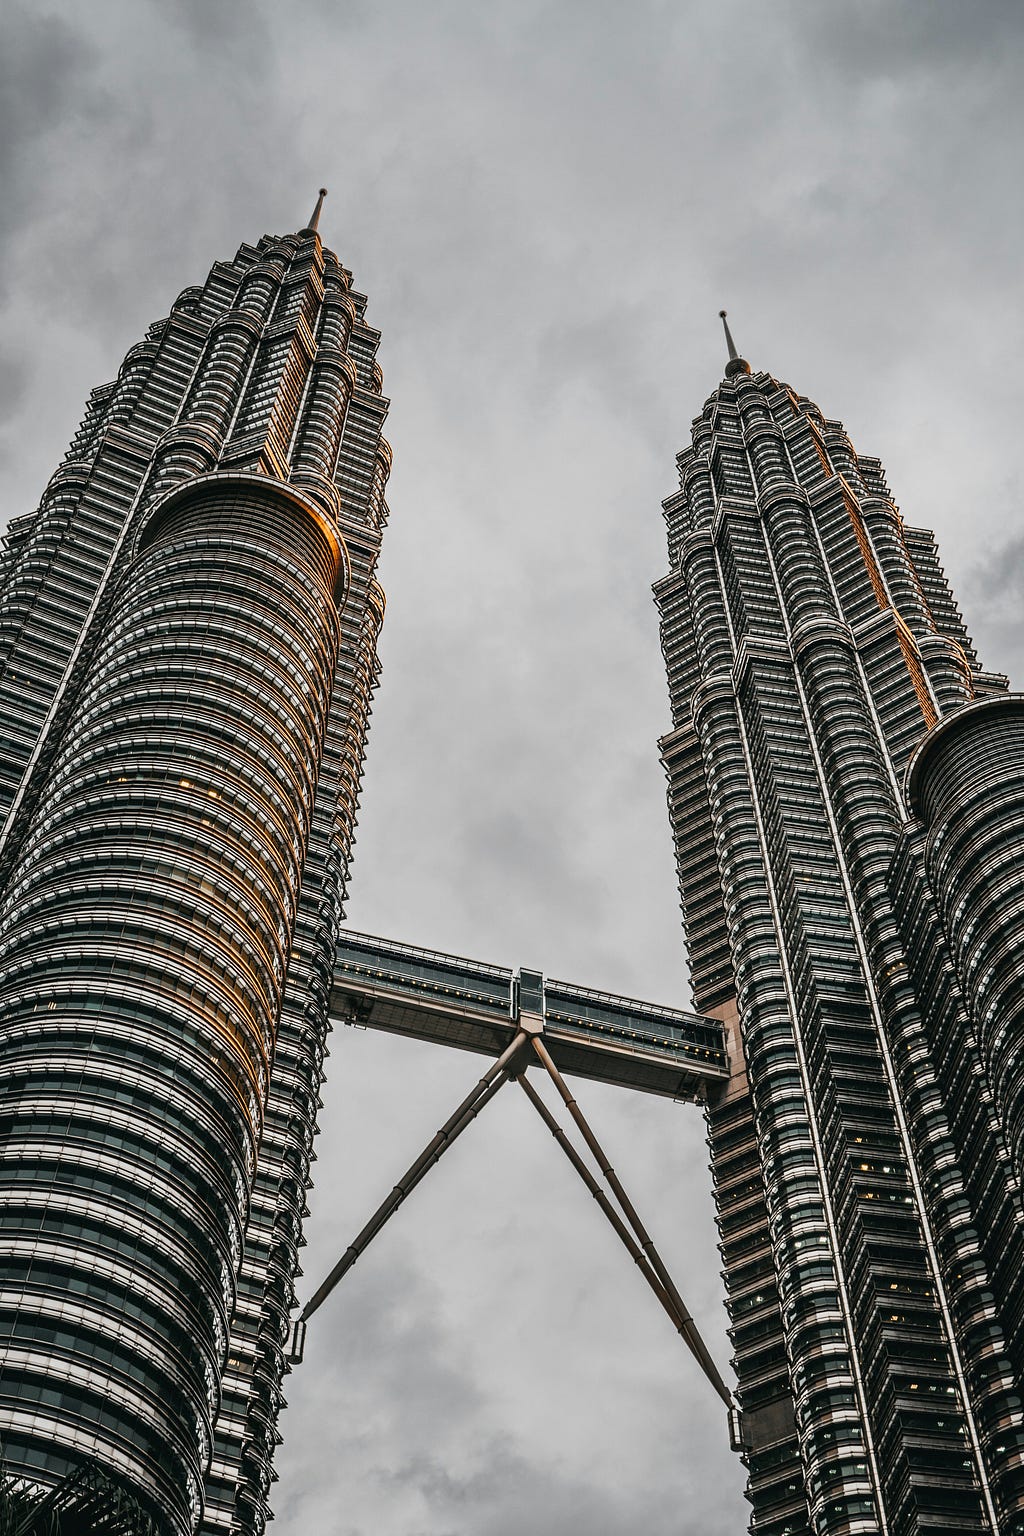 馬來西亞的雙子星大樓